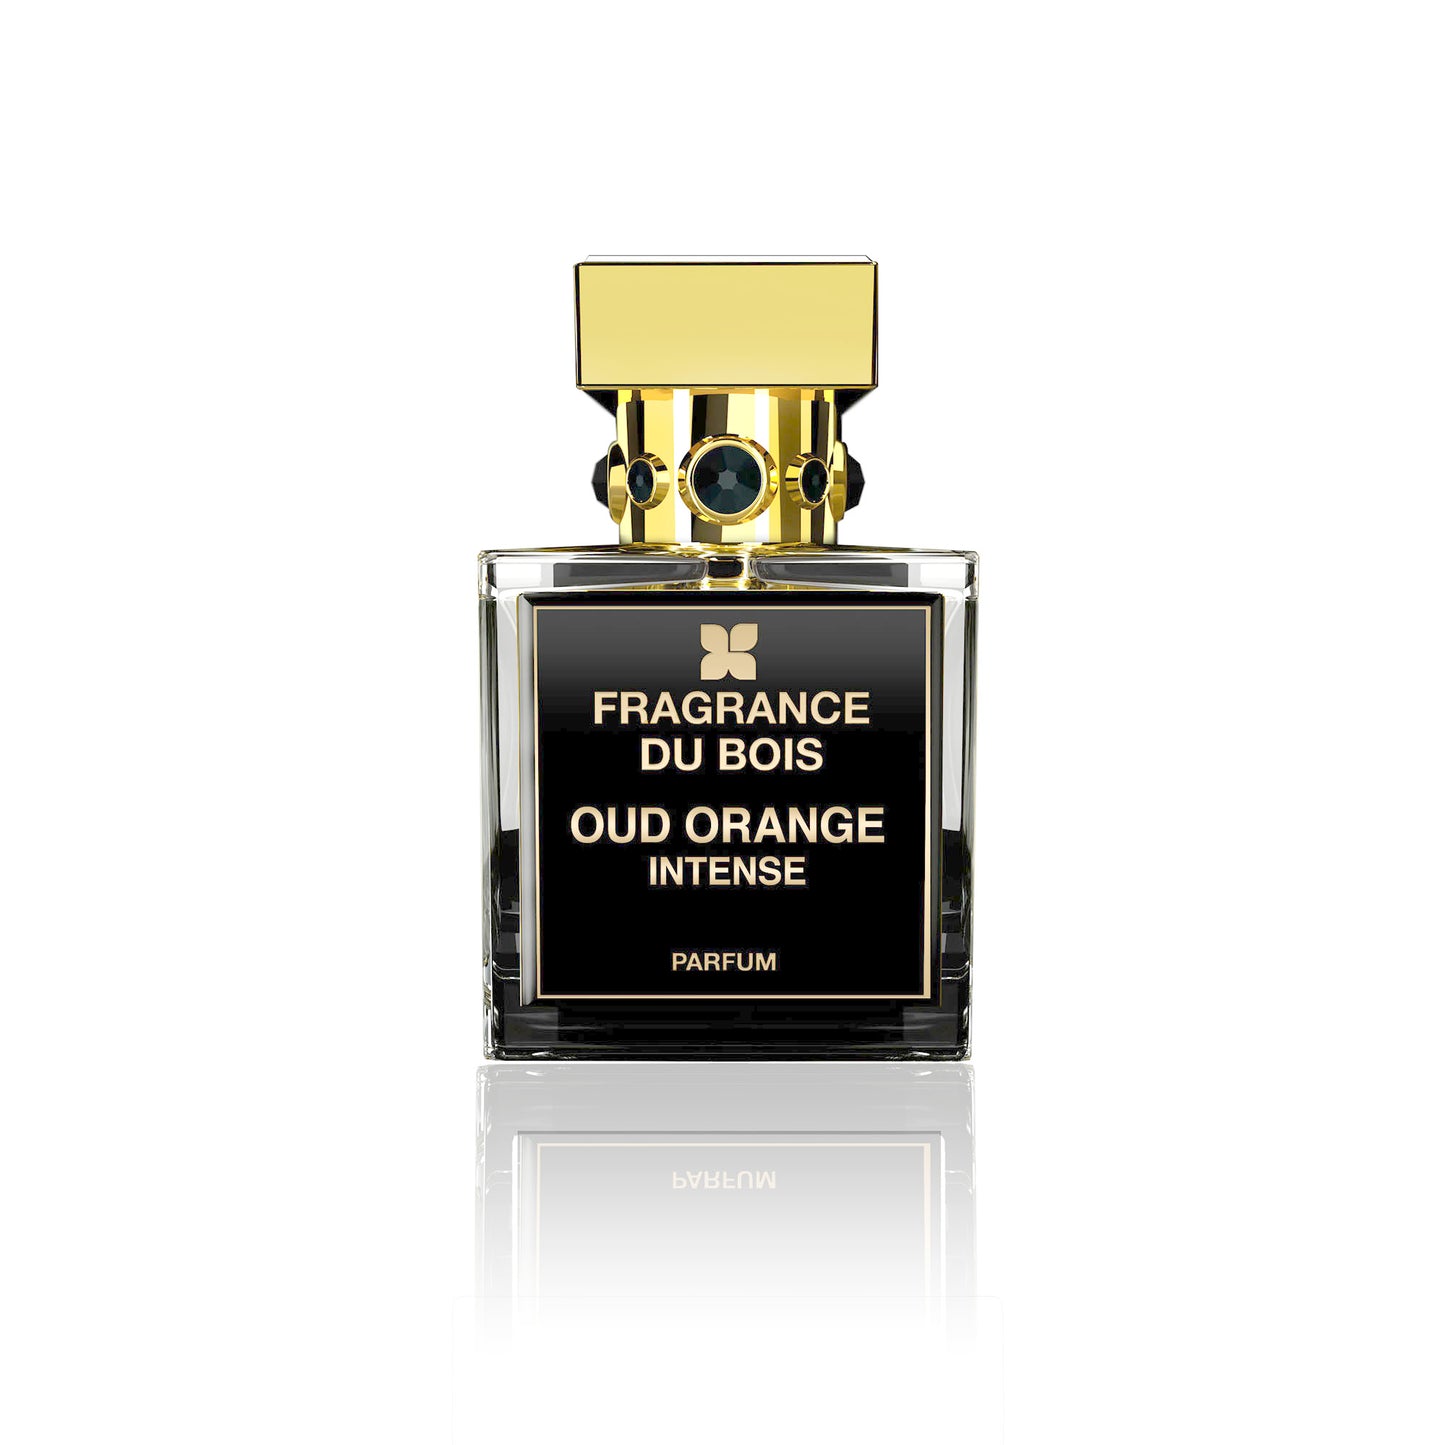 OUD ORANGE INTENSE 2ml Sample Vial - Eau De Parfum